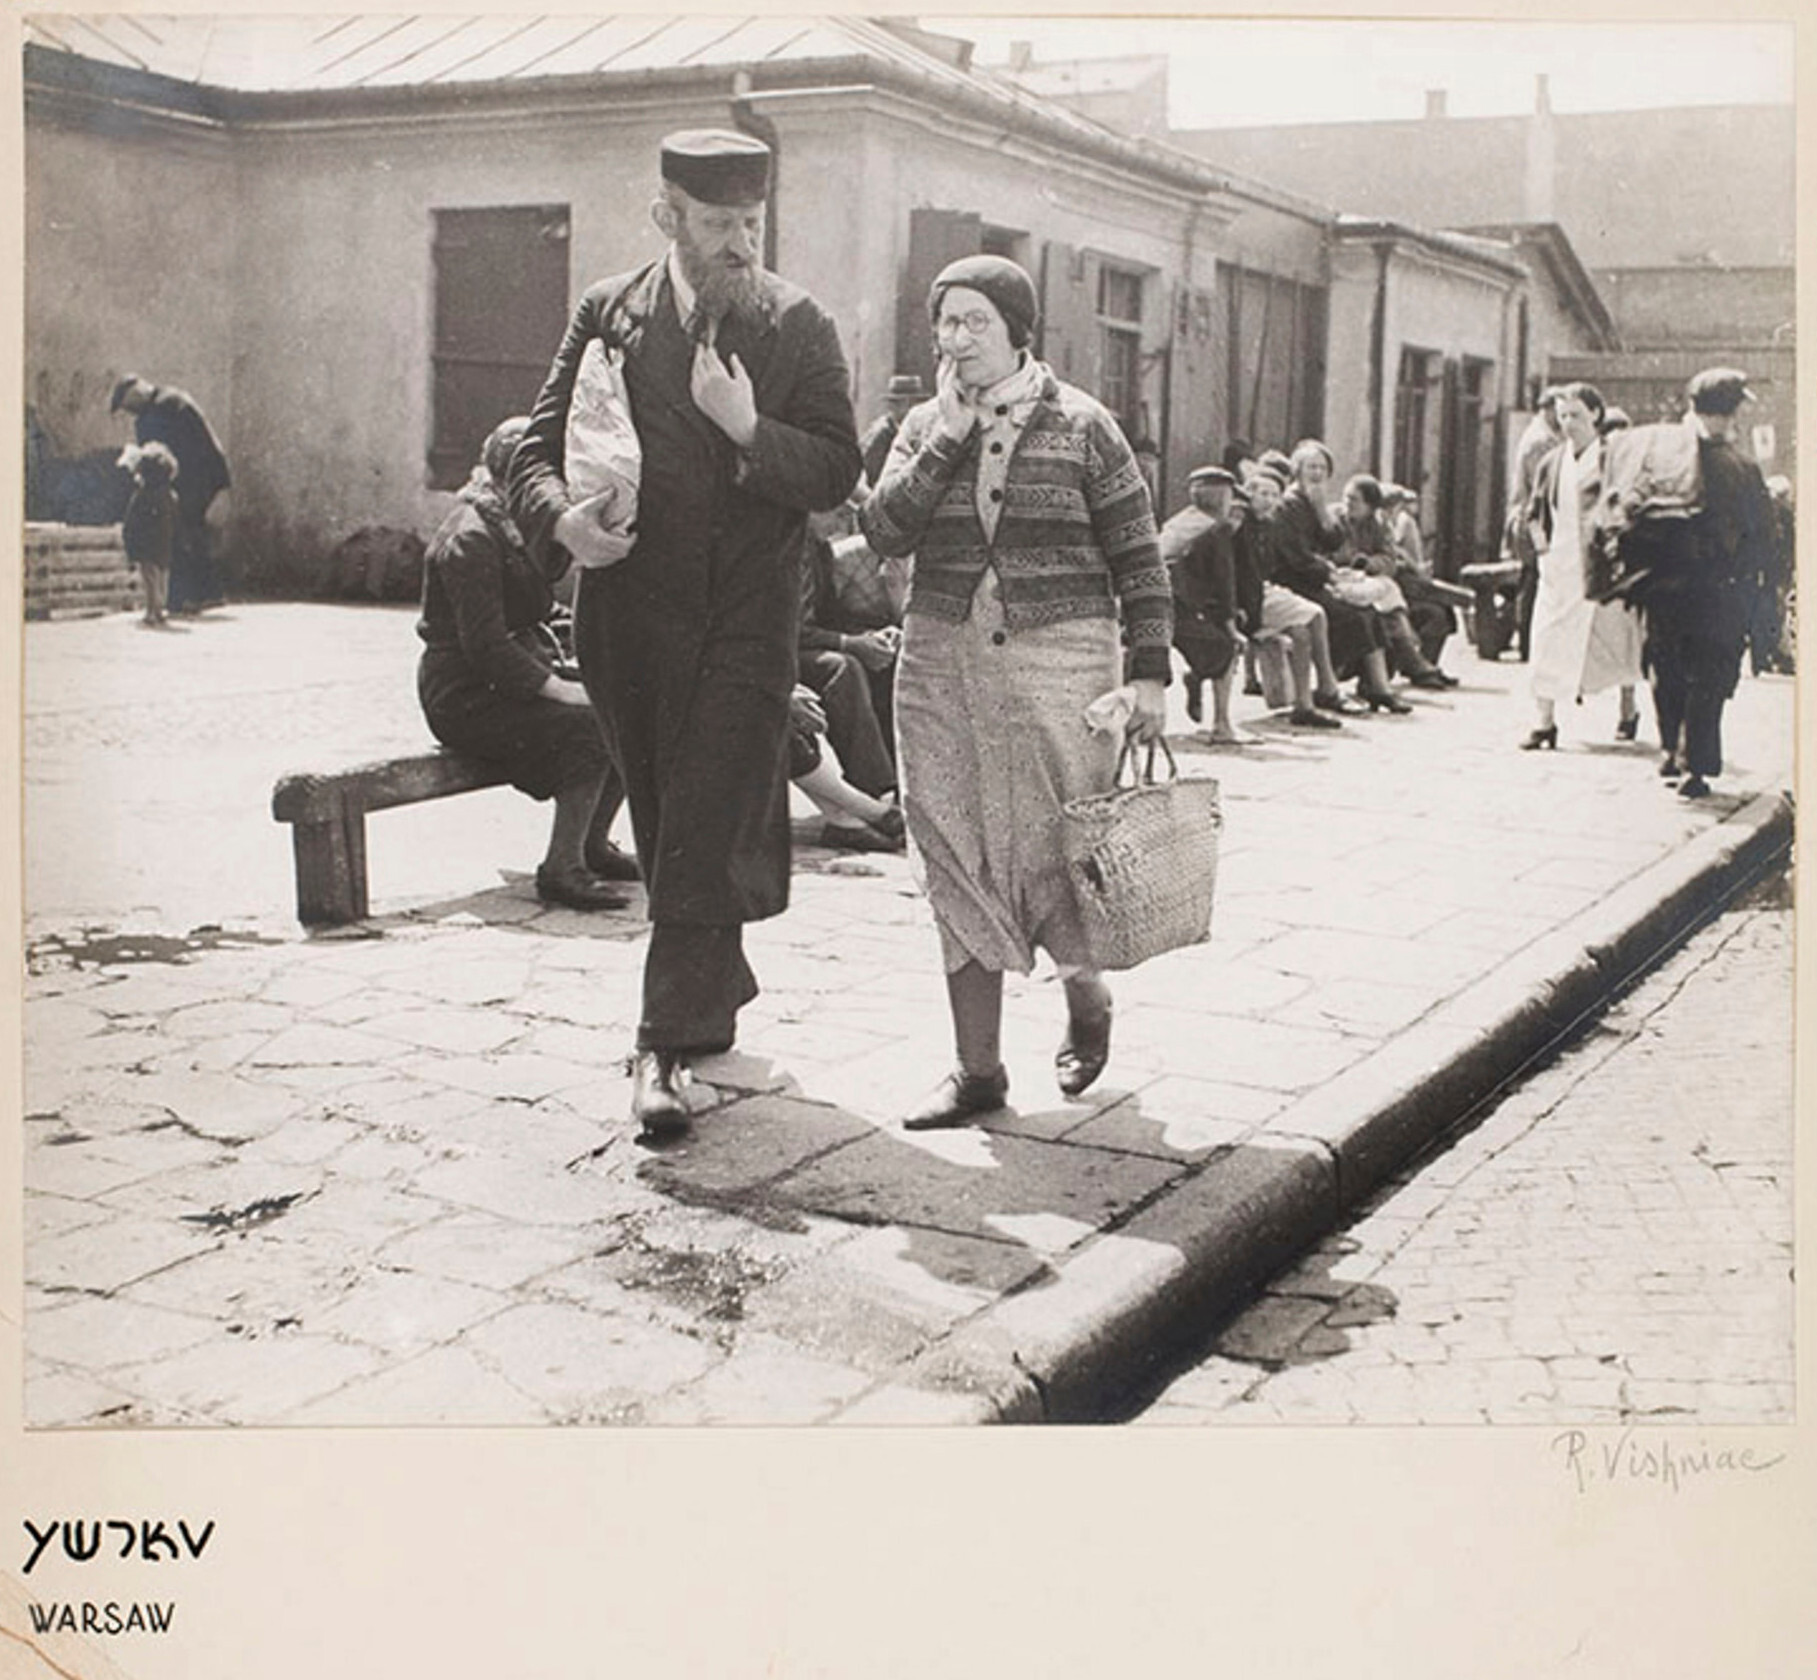 Еврейская пара страдает от антисемитского бойкота поляков, Варшава, ок. 1935-38 г. Фотограф Роман Вишняк